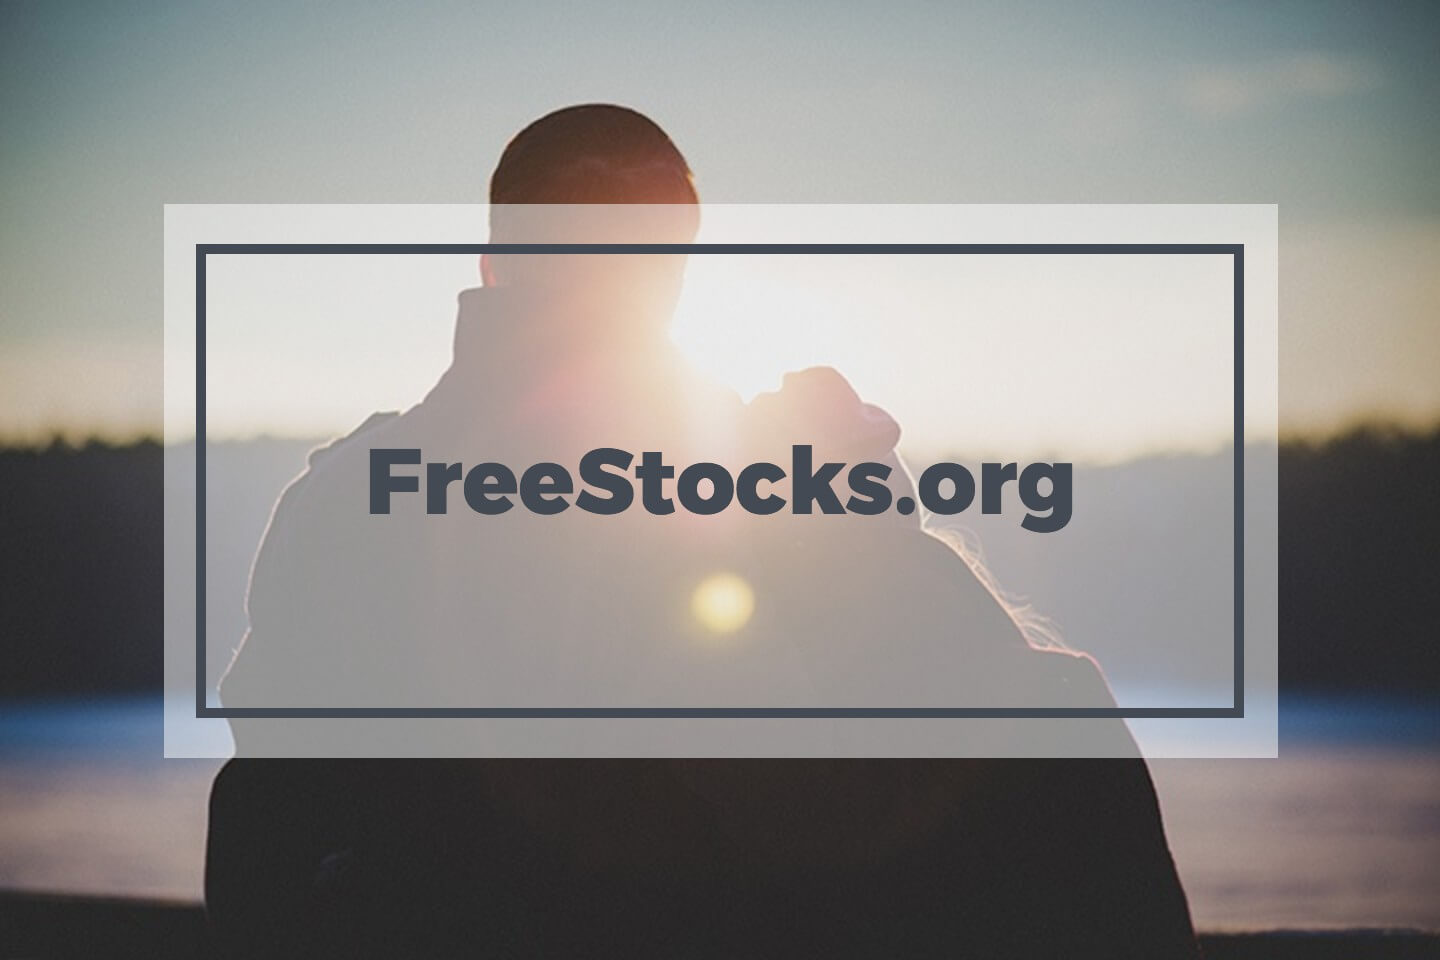 Freestocks.org free stock photos